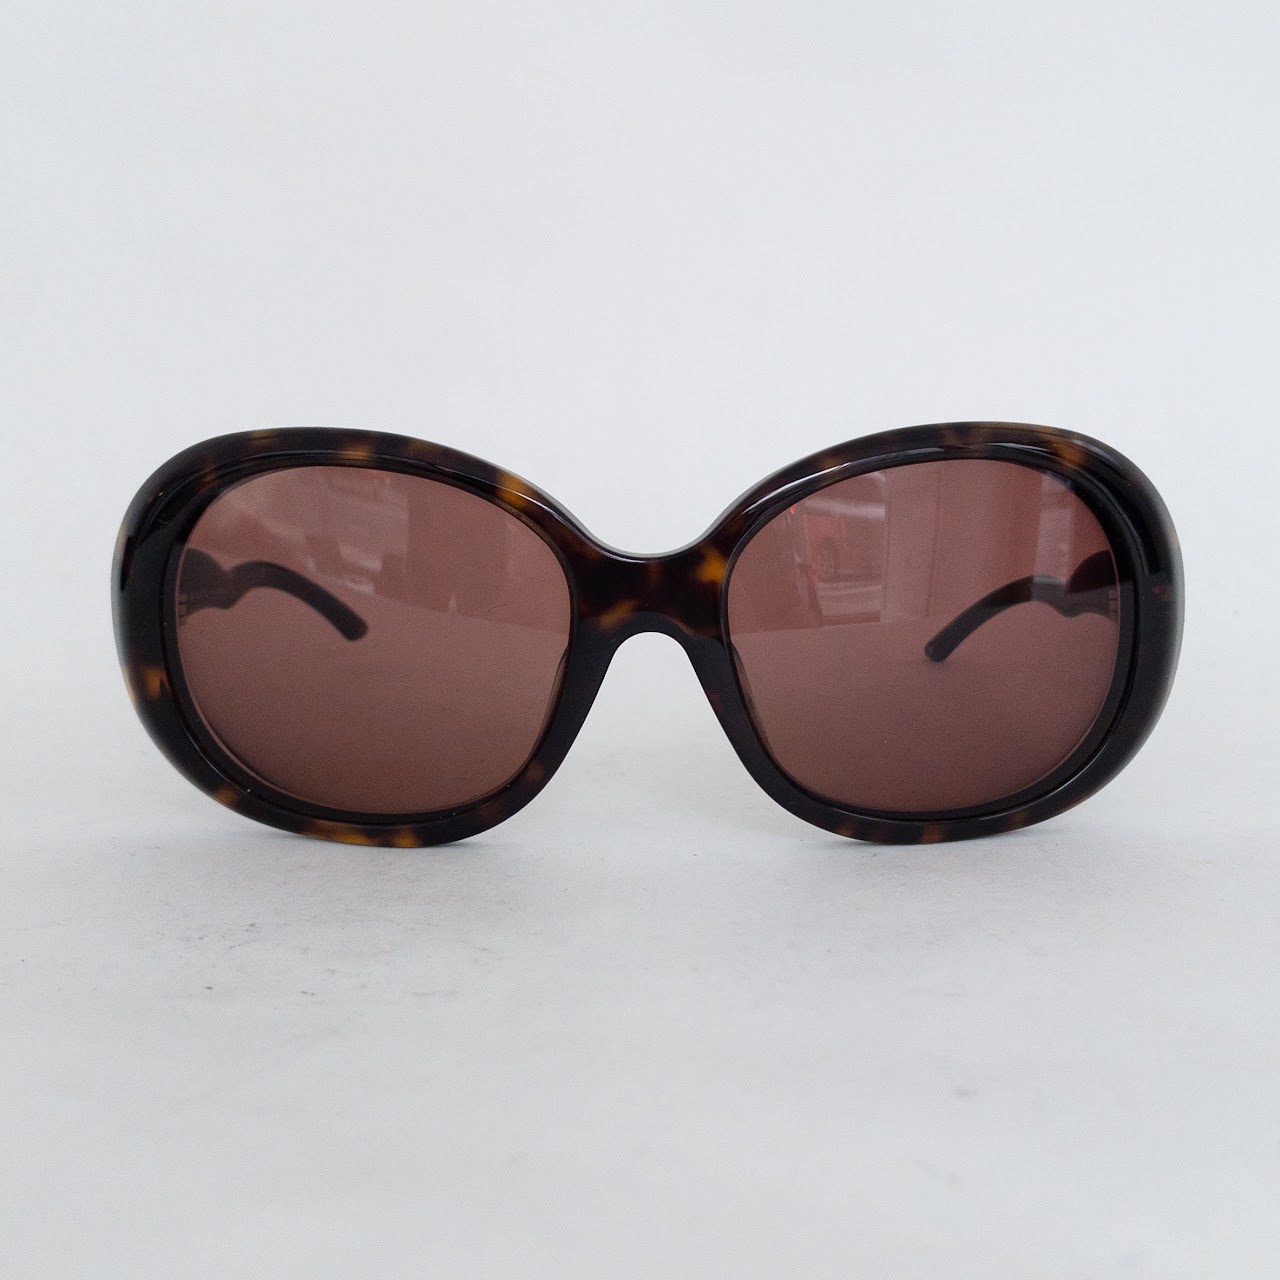 Prada Tortishell Rx Sunglasses